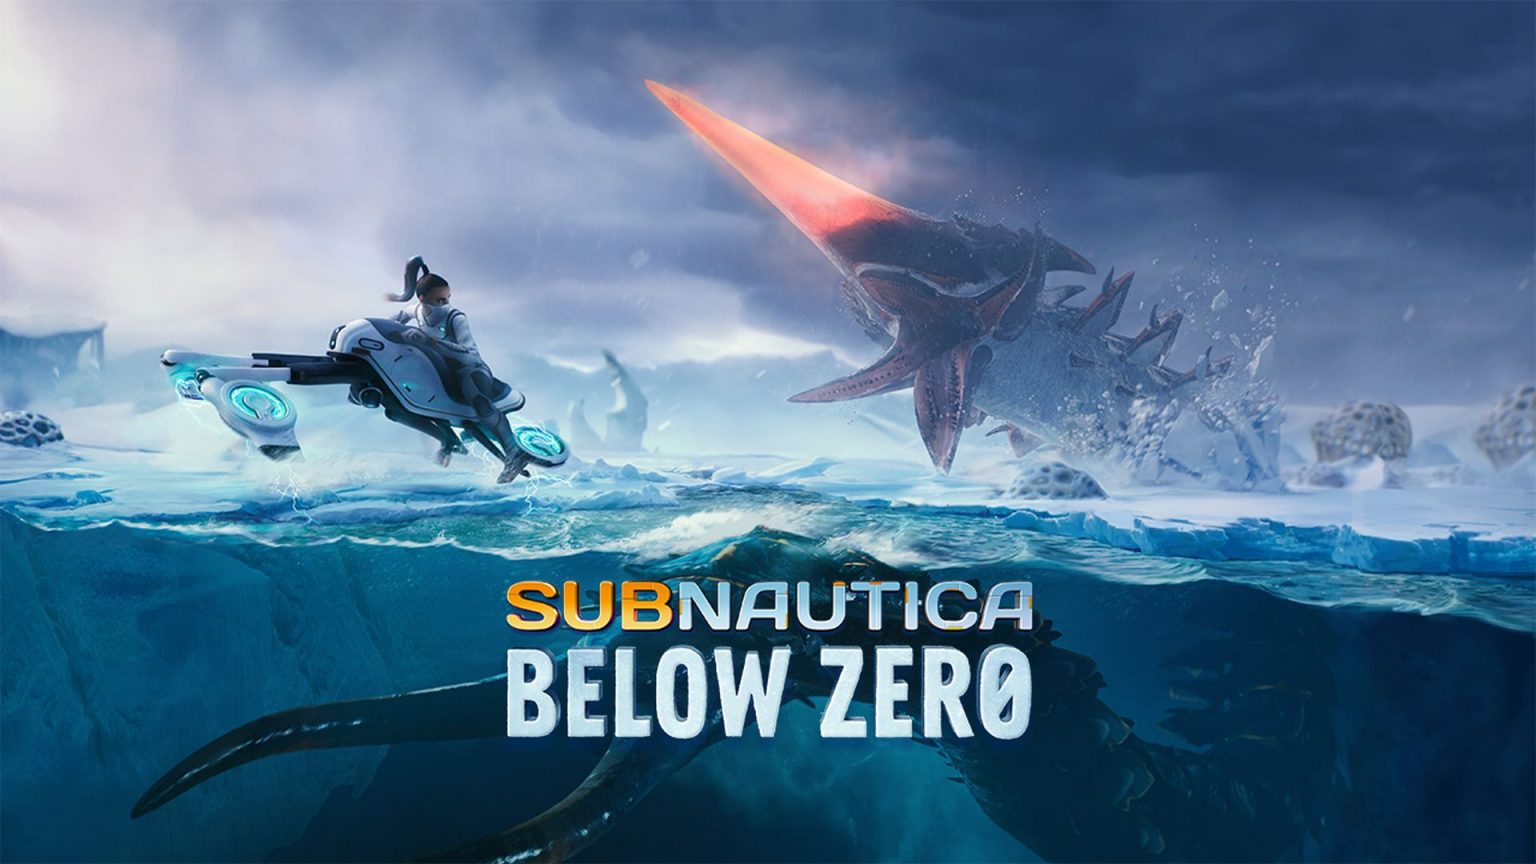 subnautica below zero release date steam